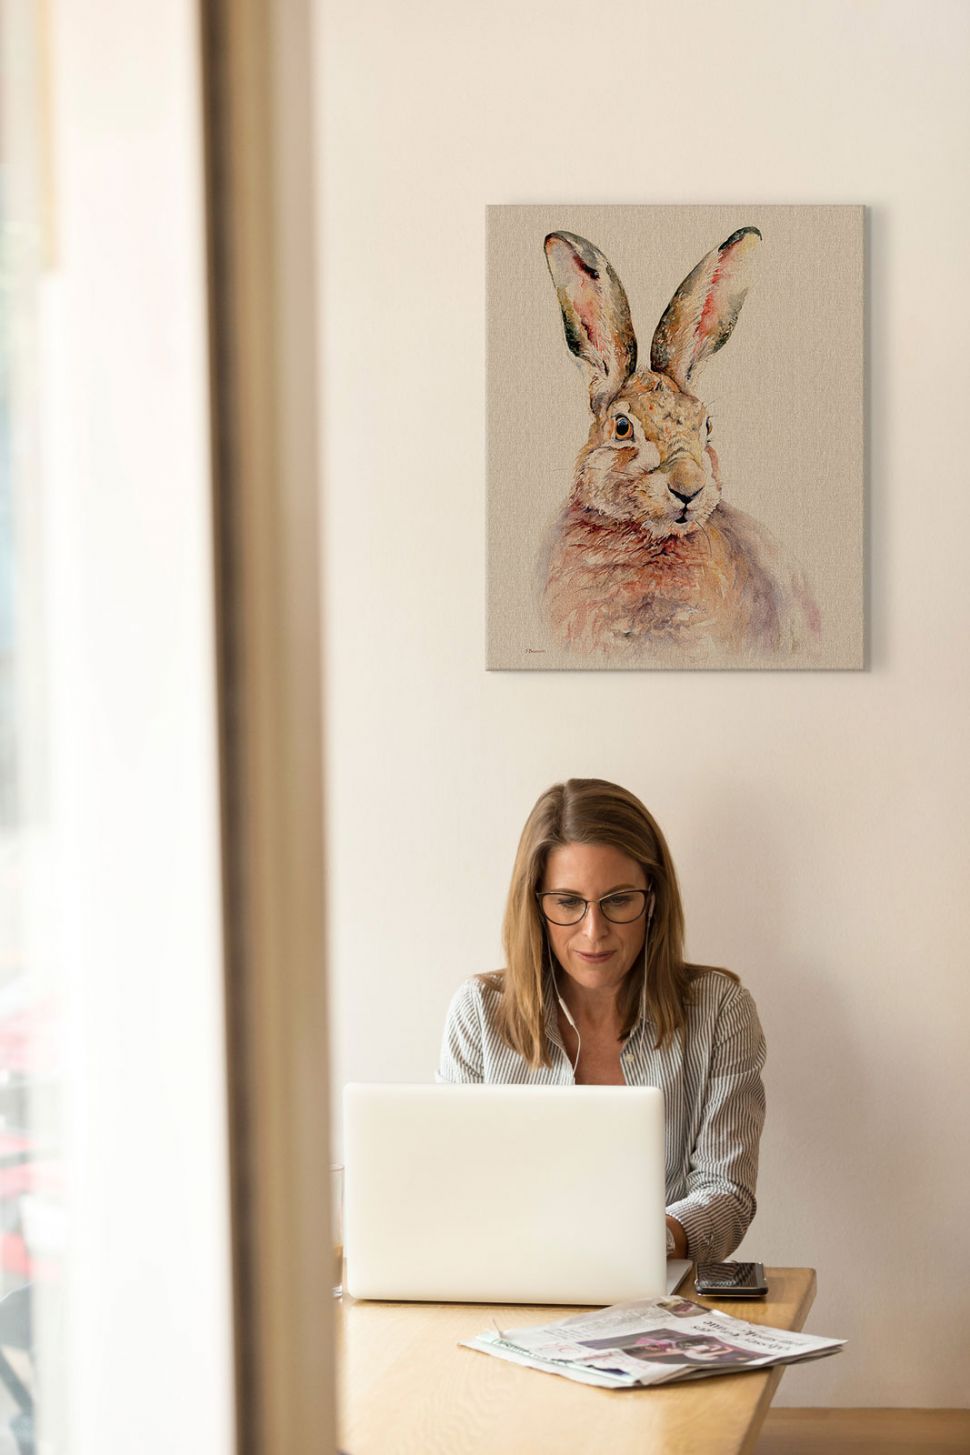 Obraz na płótnie z królikiem autorstwa Jane Bannon powieszony na białej ścianie w biurze